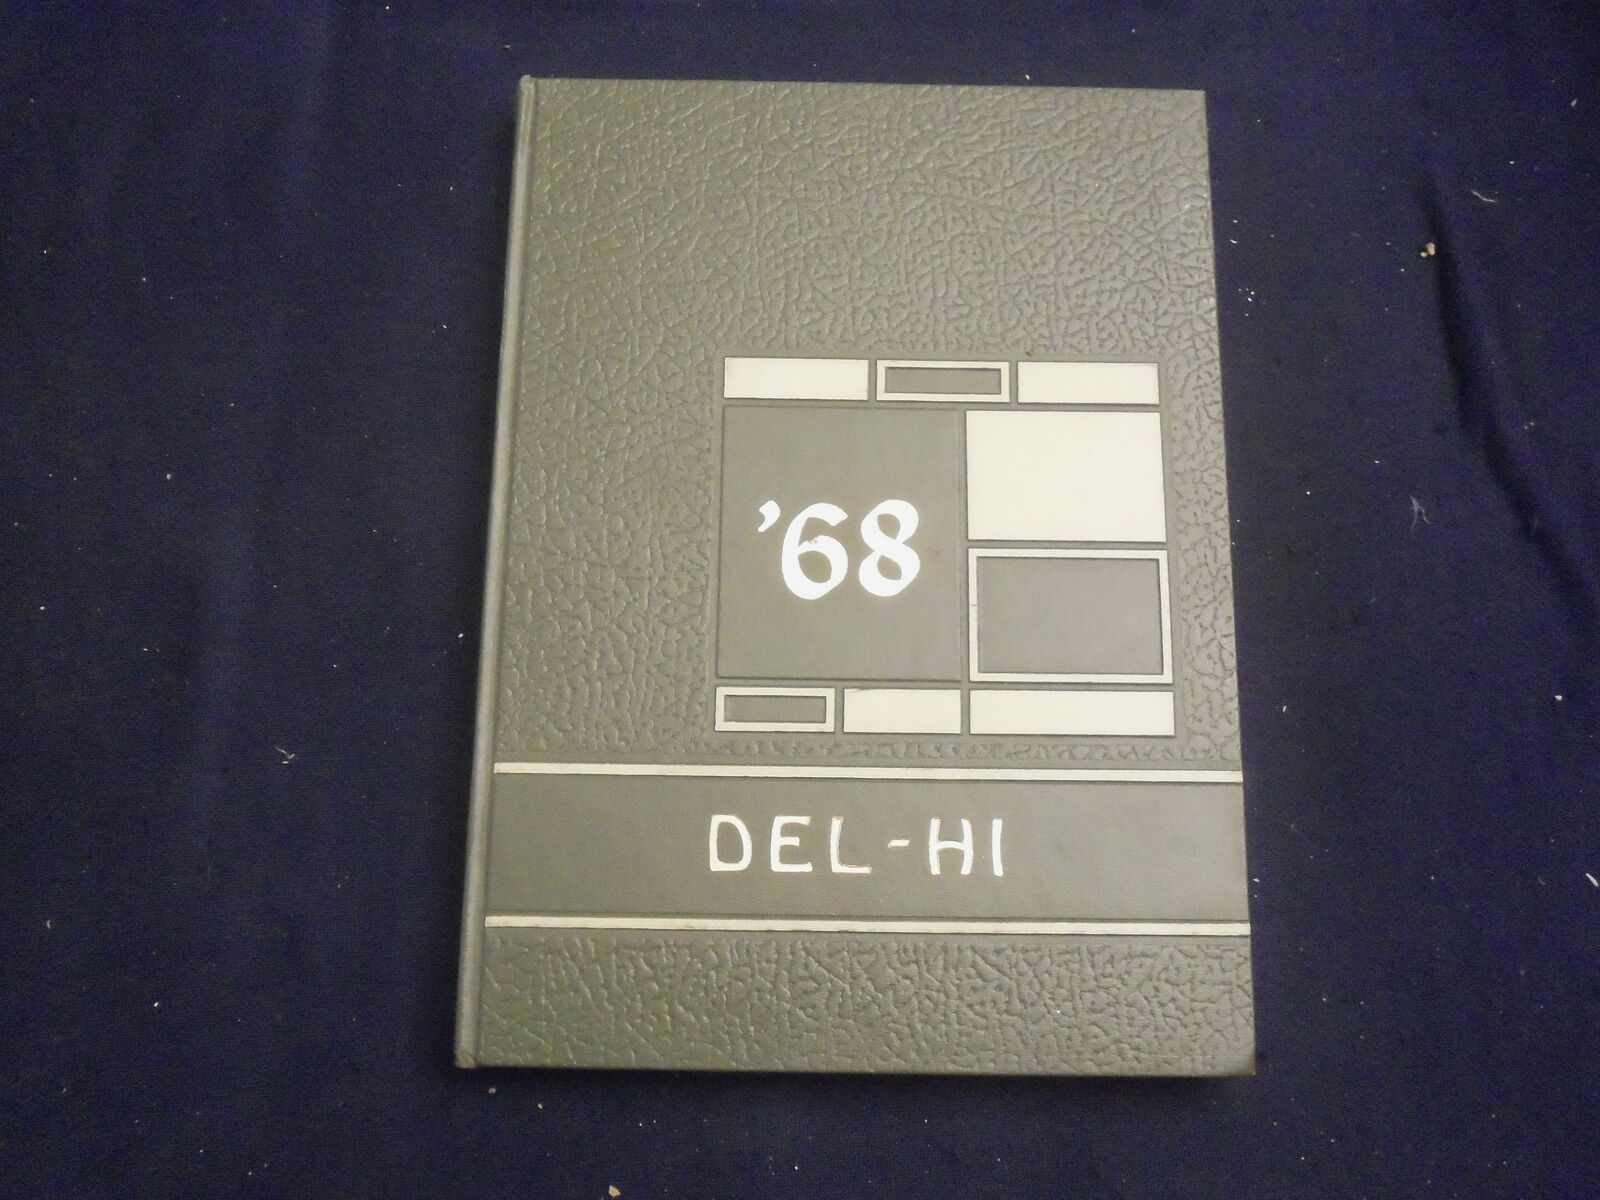 1968 THE DEL-HI DELTA HIGH SCHOOL YEARBOOK - DELTA, OHIO - YB 2765